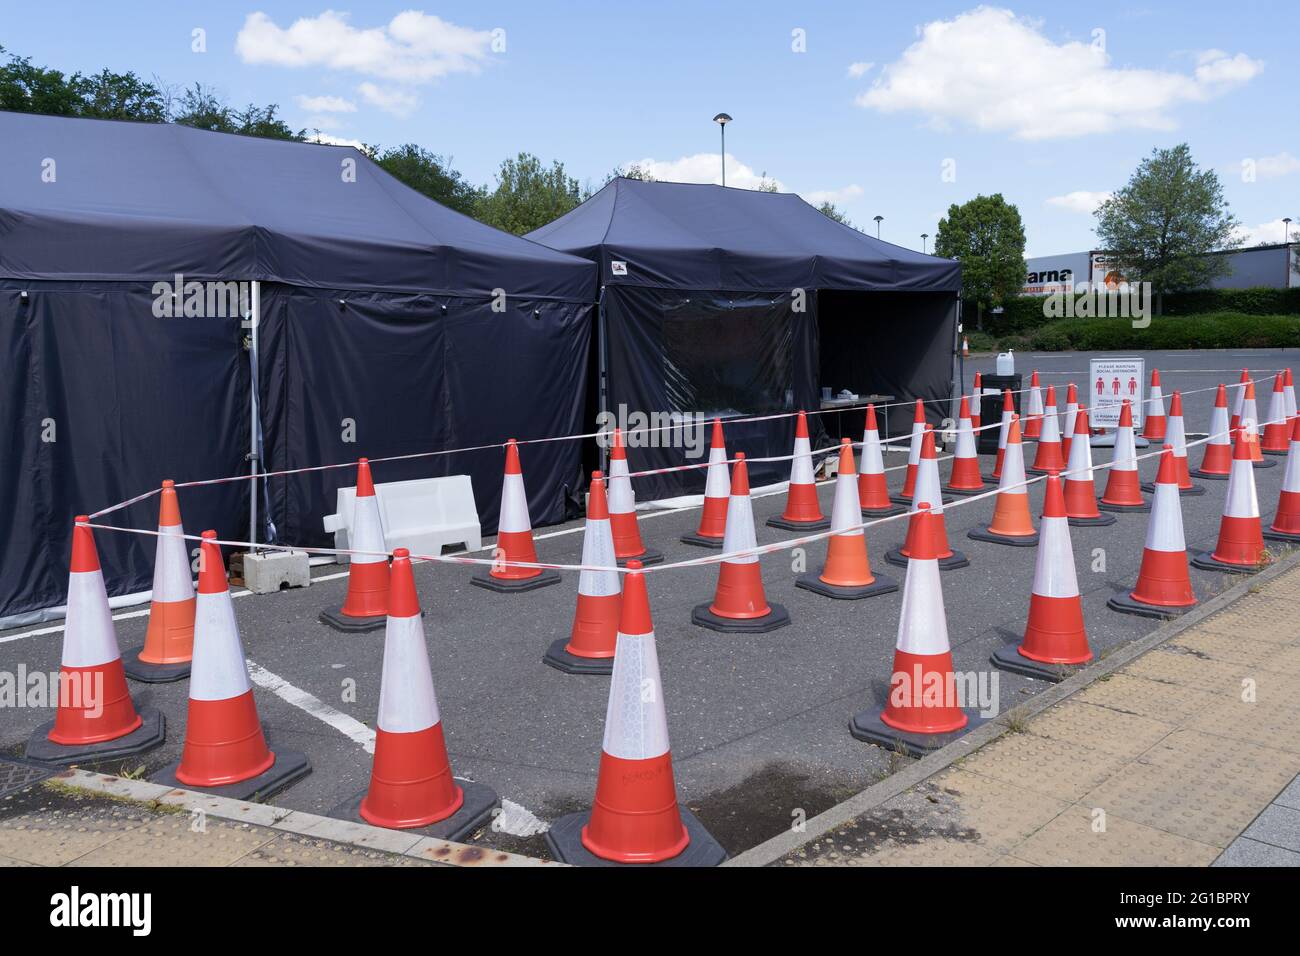 Système de file d'attente formé par des cornes de circulation routière à l'extérieur de la tente pour le centre d'essais Covid-19 à Beaconsfield services , J2 M40, Angleterre, Royaume-Uni Banque D'Images